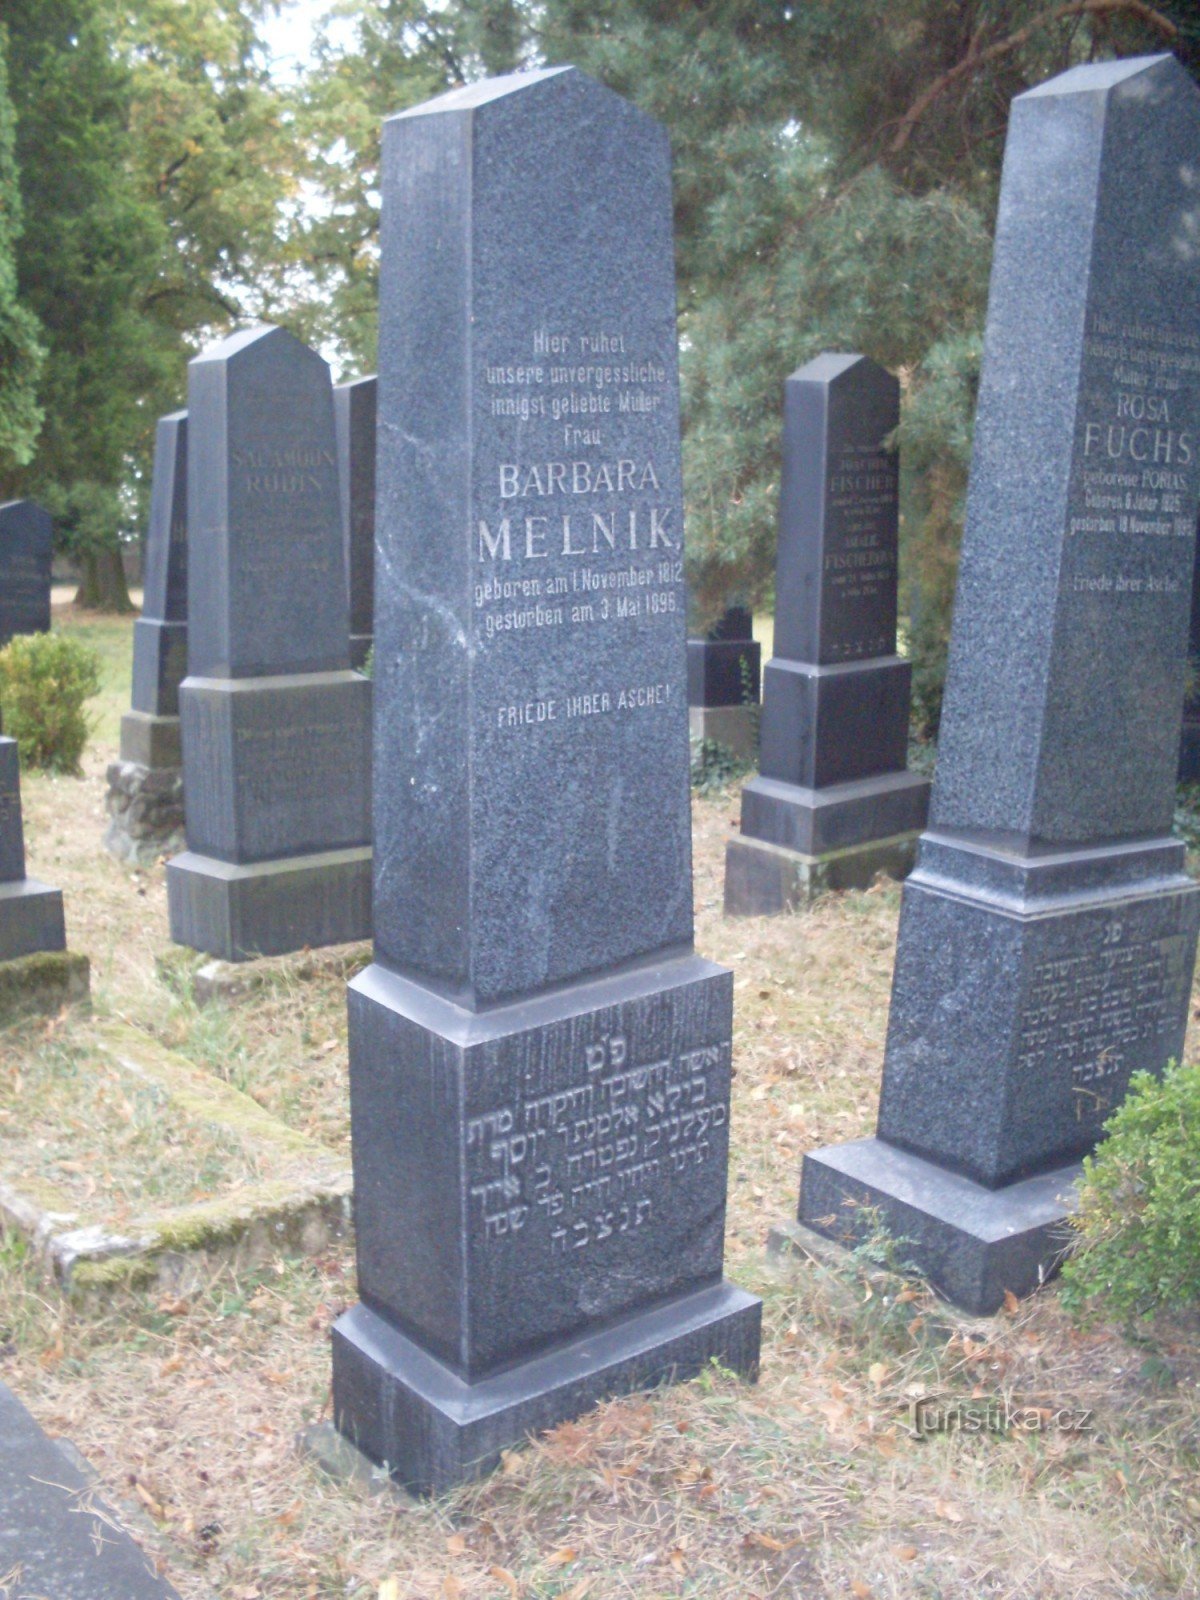 Mělníkistä Boleslaviin tulleen Barbora Melnikin hauta